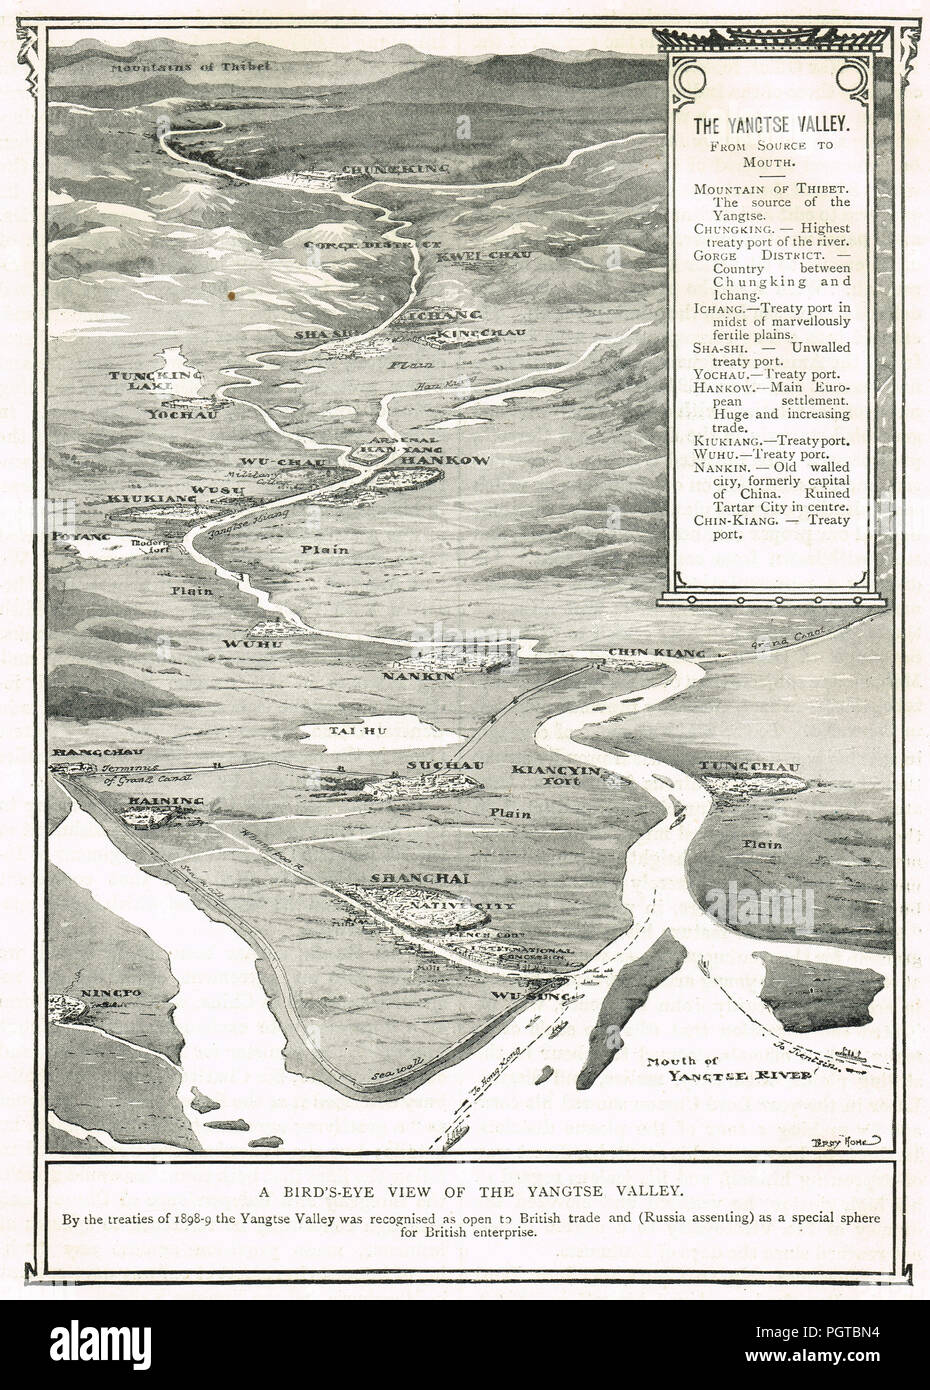 Vogelperspektive des Yangtze Tal, ca. 1899, einen speziellen Bereich für britische Unternehmen, Russland Ordensangehörige, geöffnet zu den Britischen Handel durch Verträge von 1898-99 Stockfoto